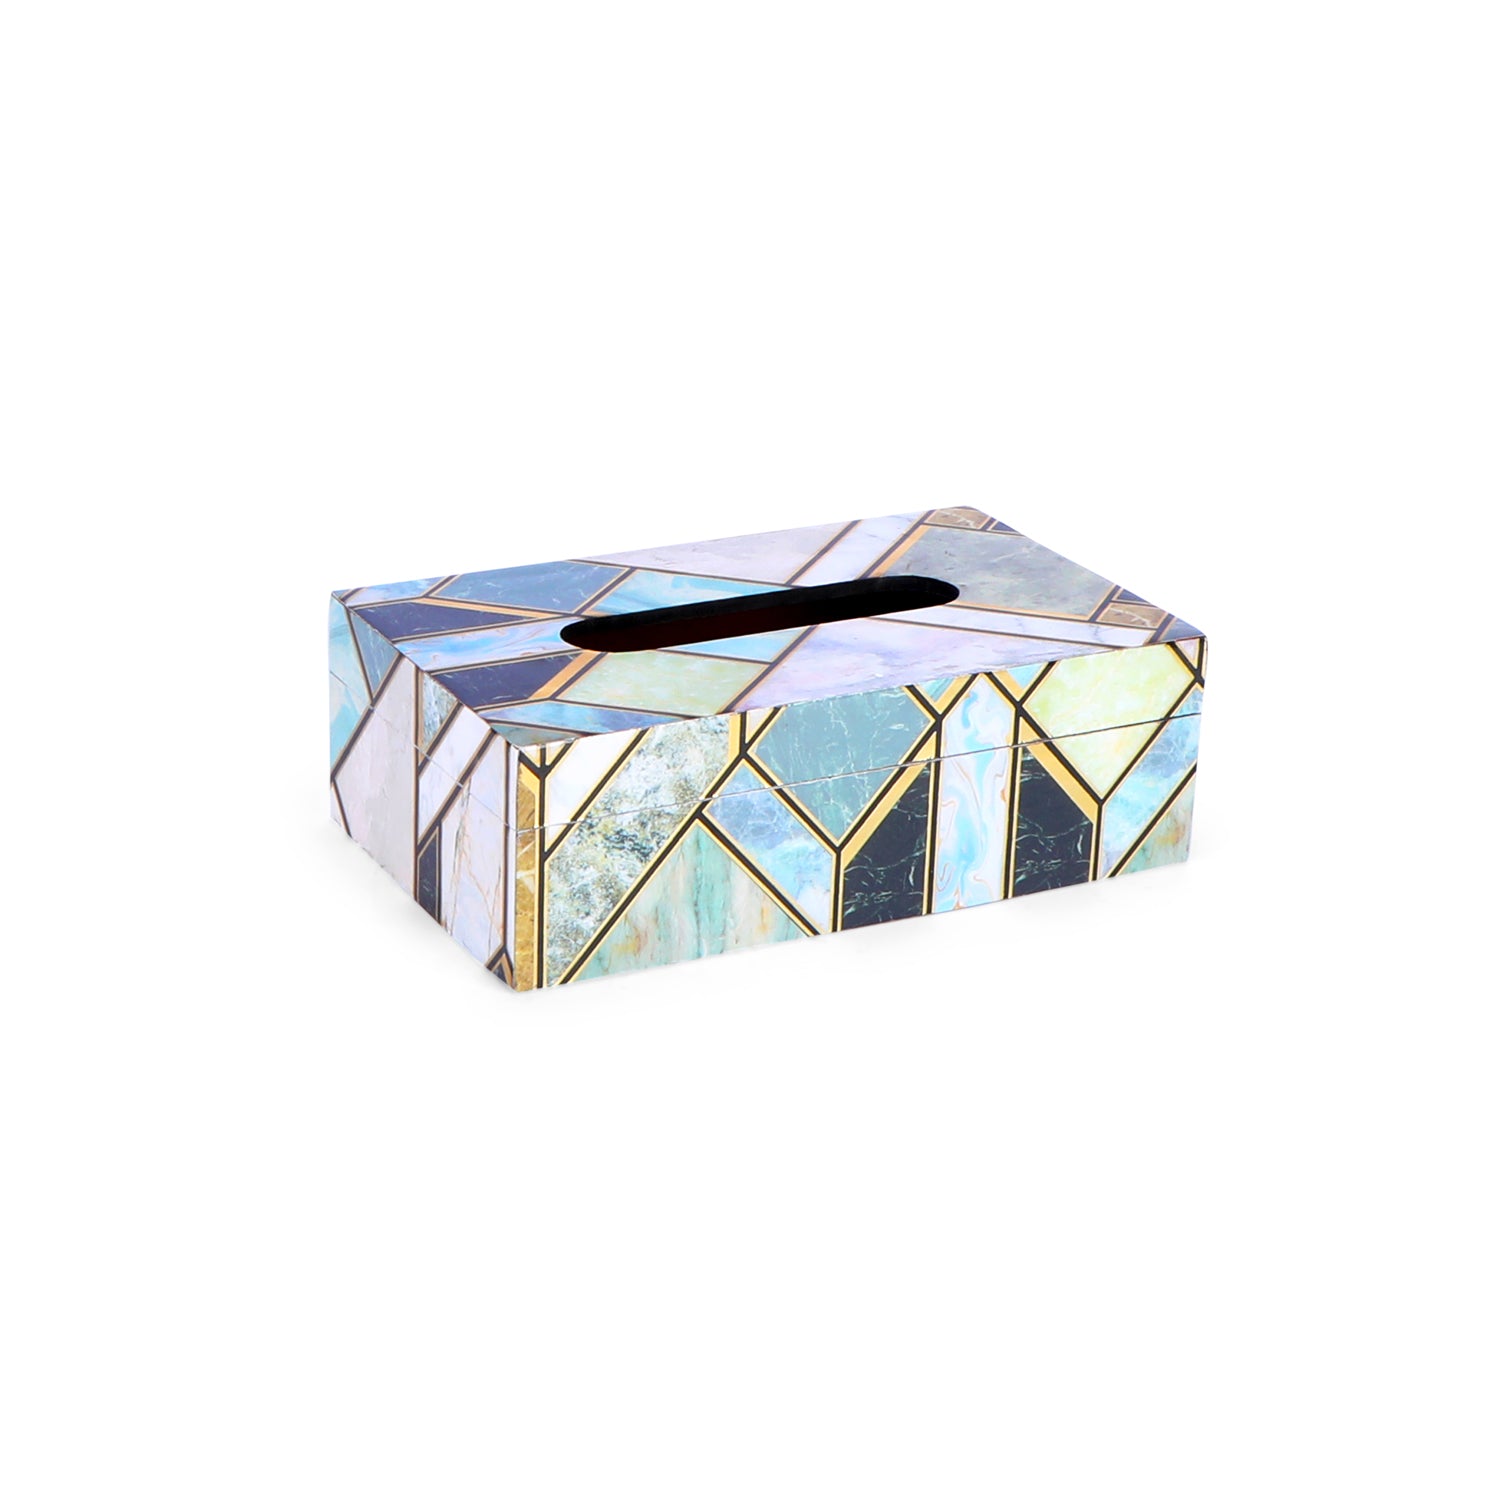 Tissue Box - Mosaic 5- The Home Co.